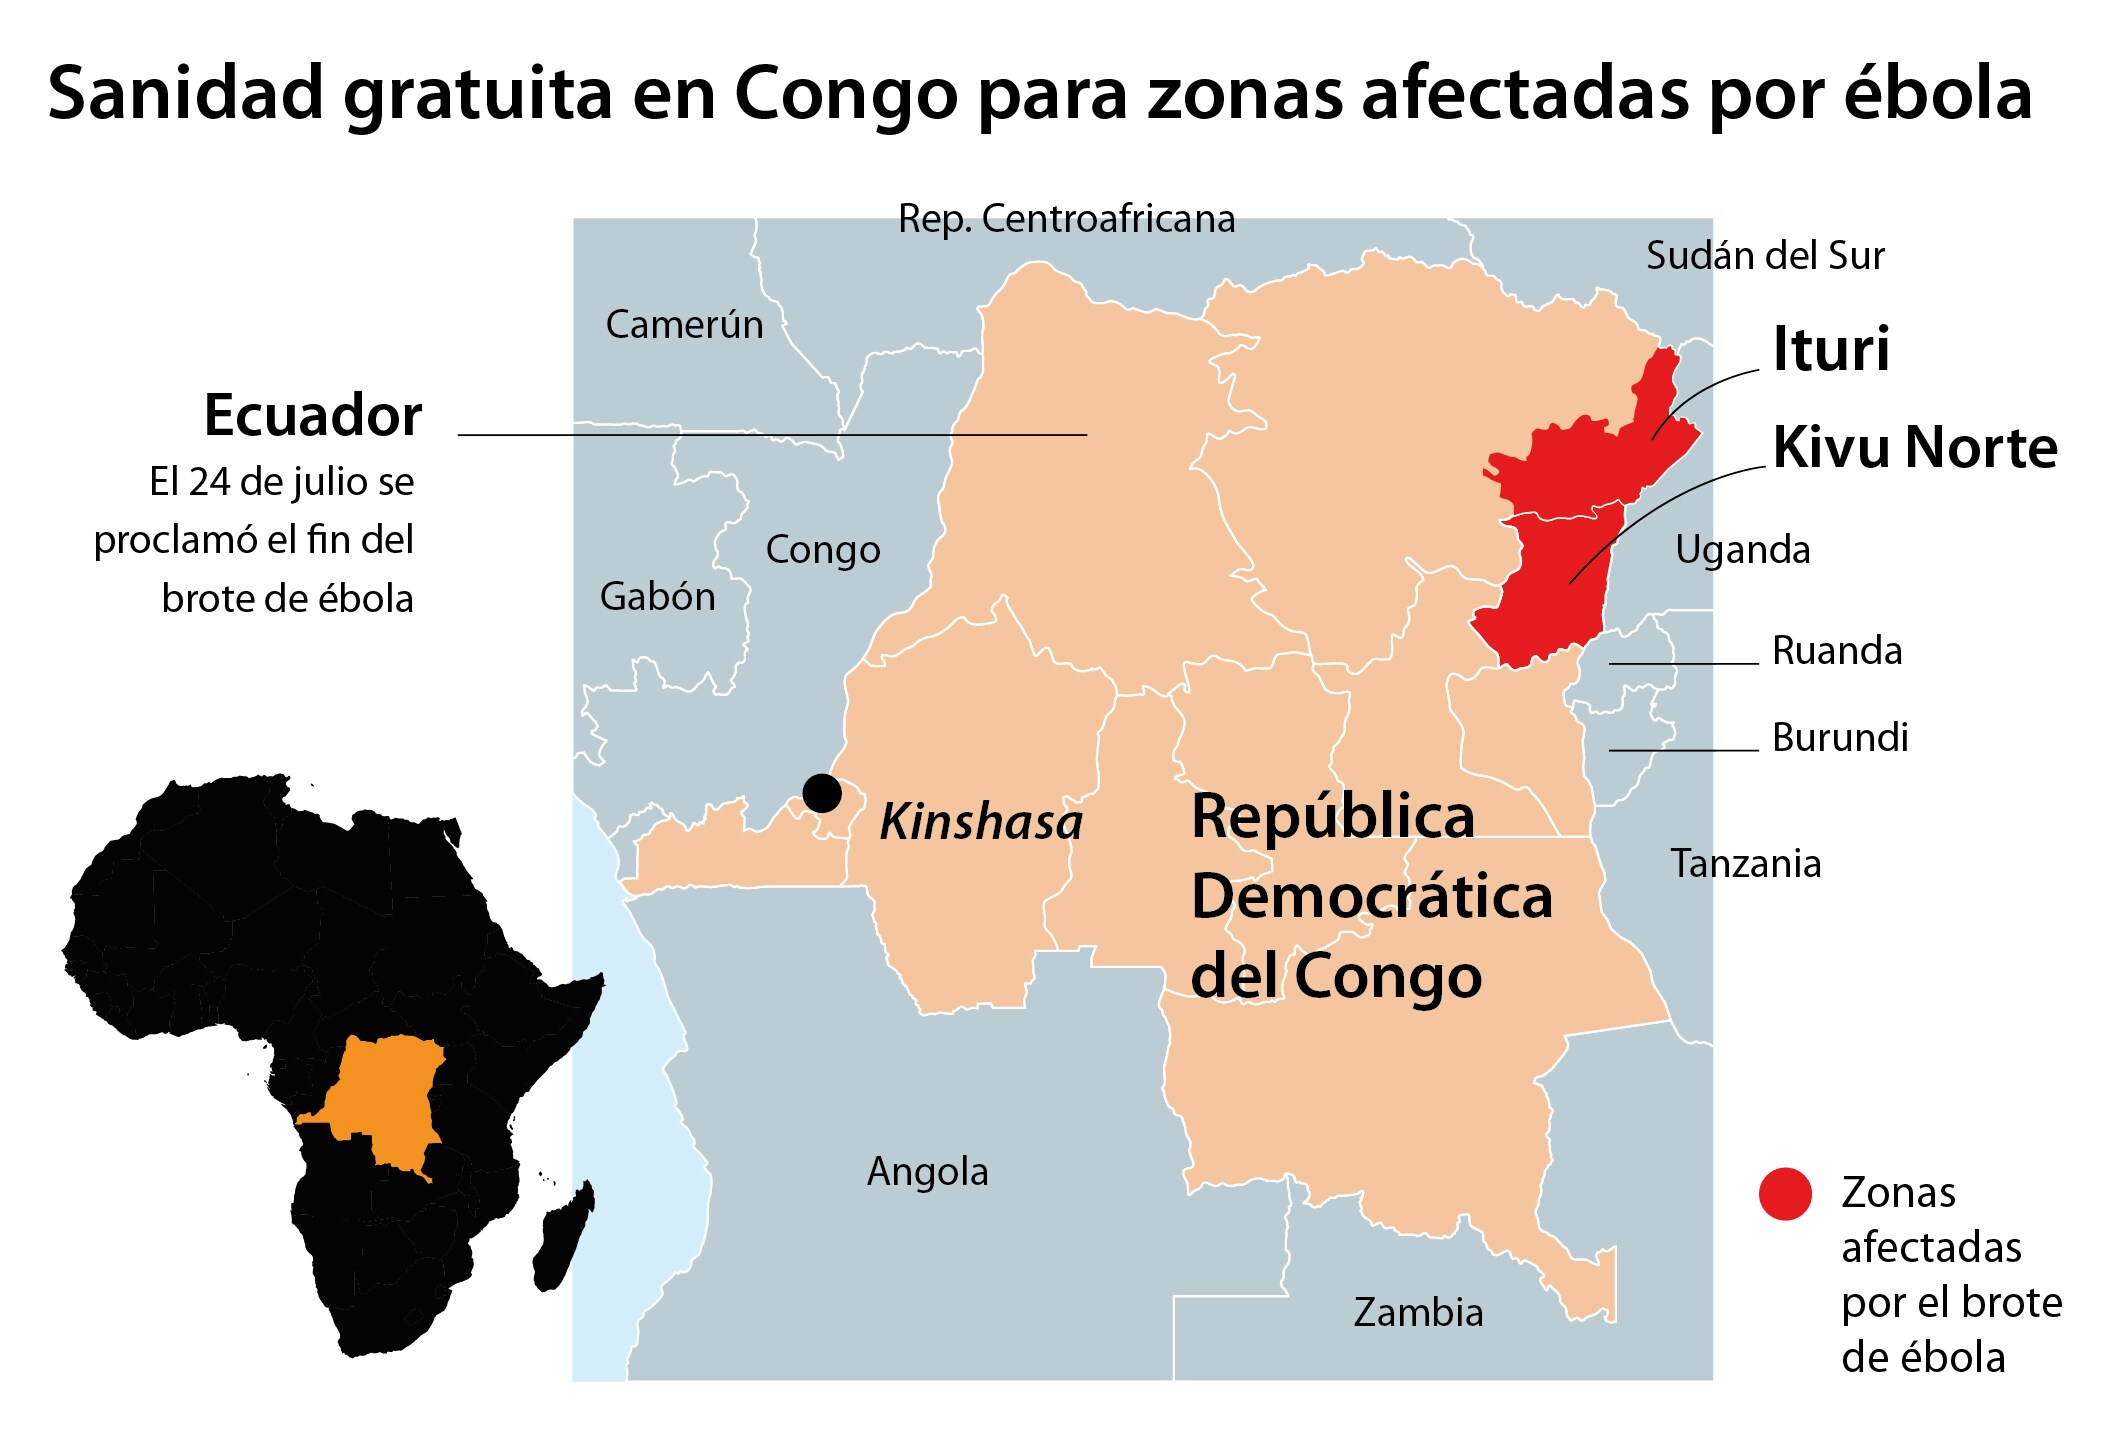 El conflicto armado dificultará la lucha contra el ébola en la República Democrática del Congo